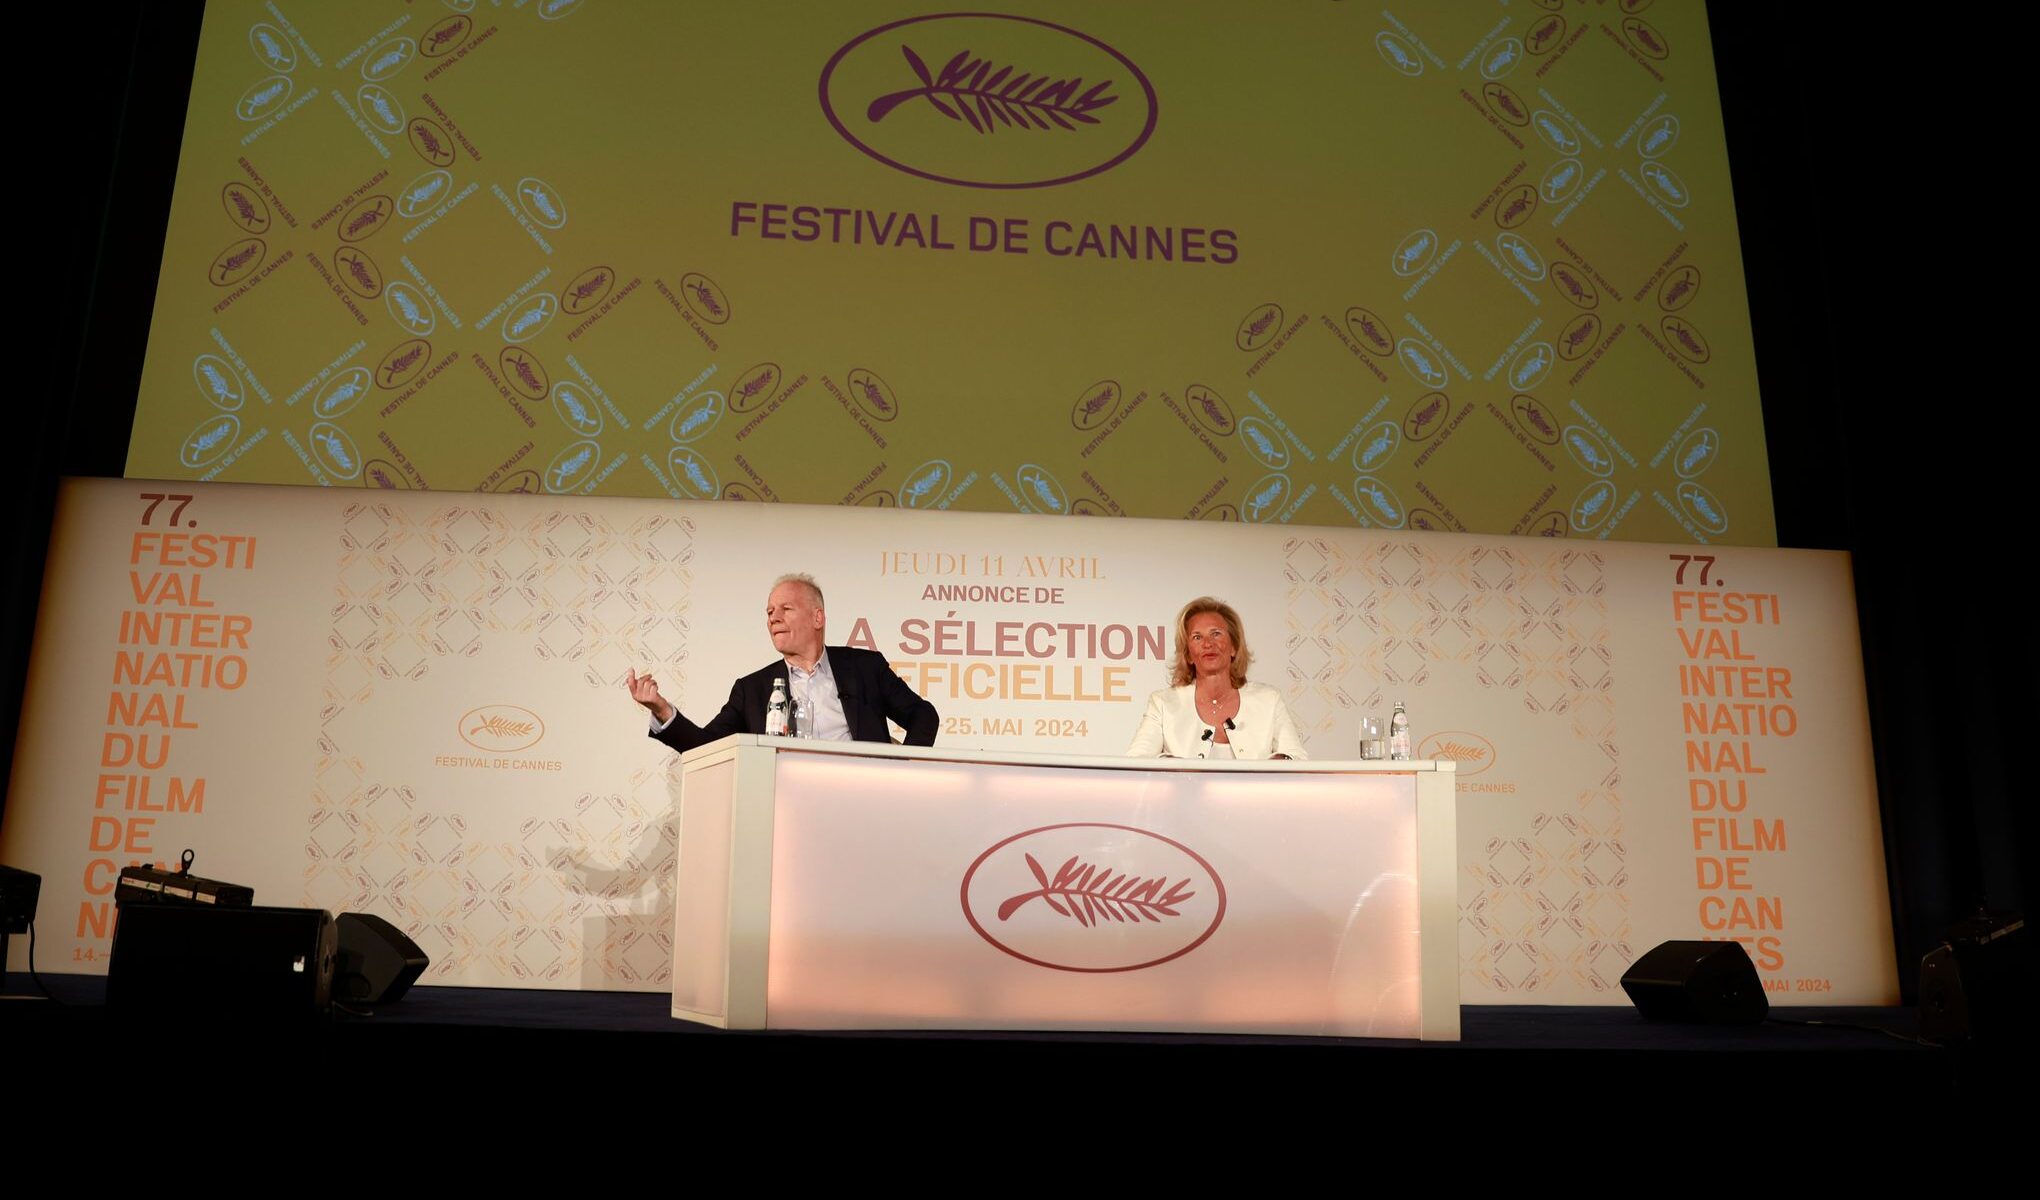 Il fascino di Parthenope brilla a Cannes: tutti i dettagli del Festival